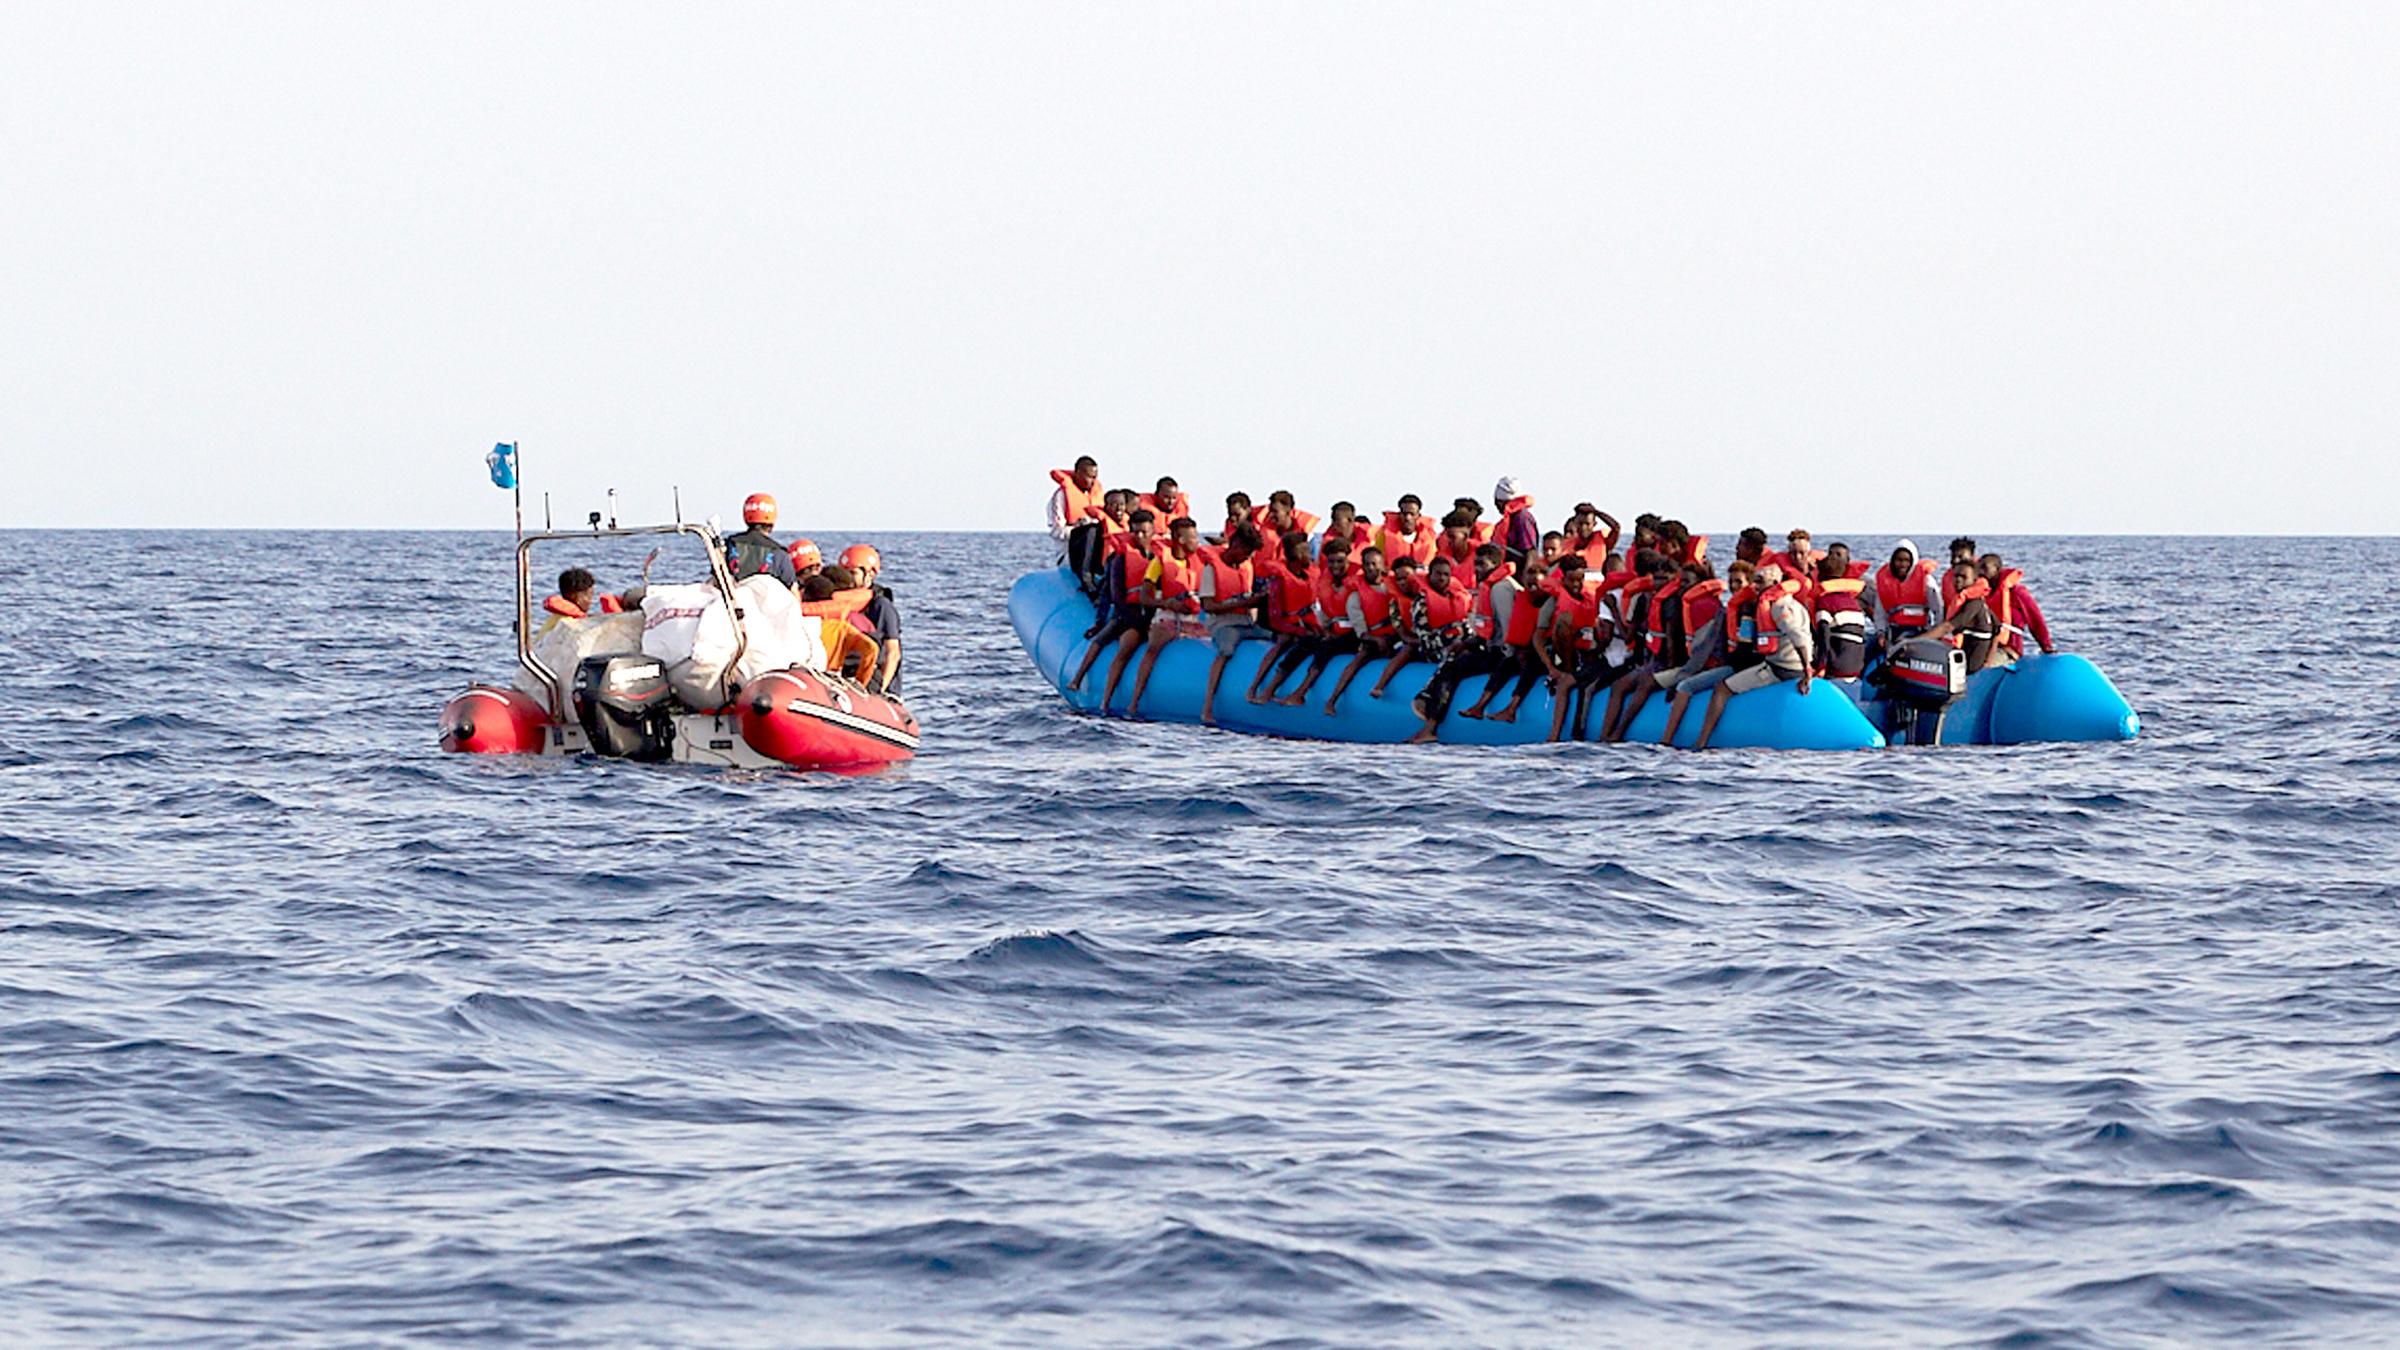 Seenotrettung Im Mittelmeer Weitere Bootsunglucke Auf Dem Weg Nach Europa Zdfheute